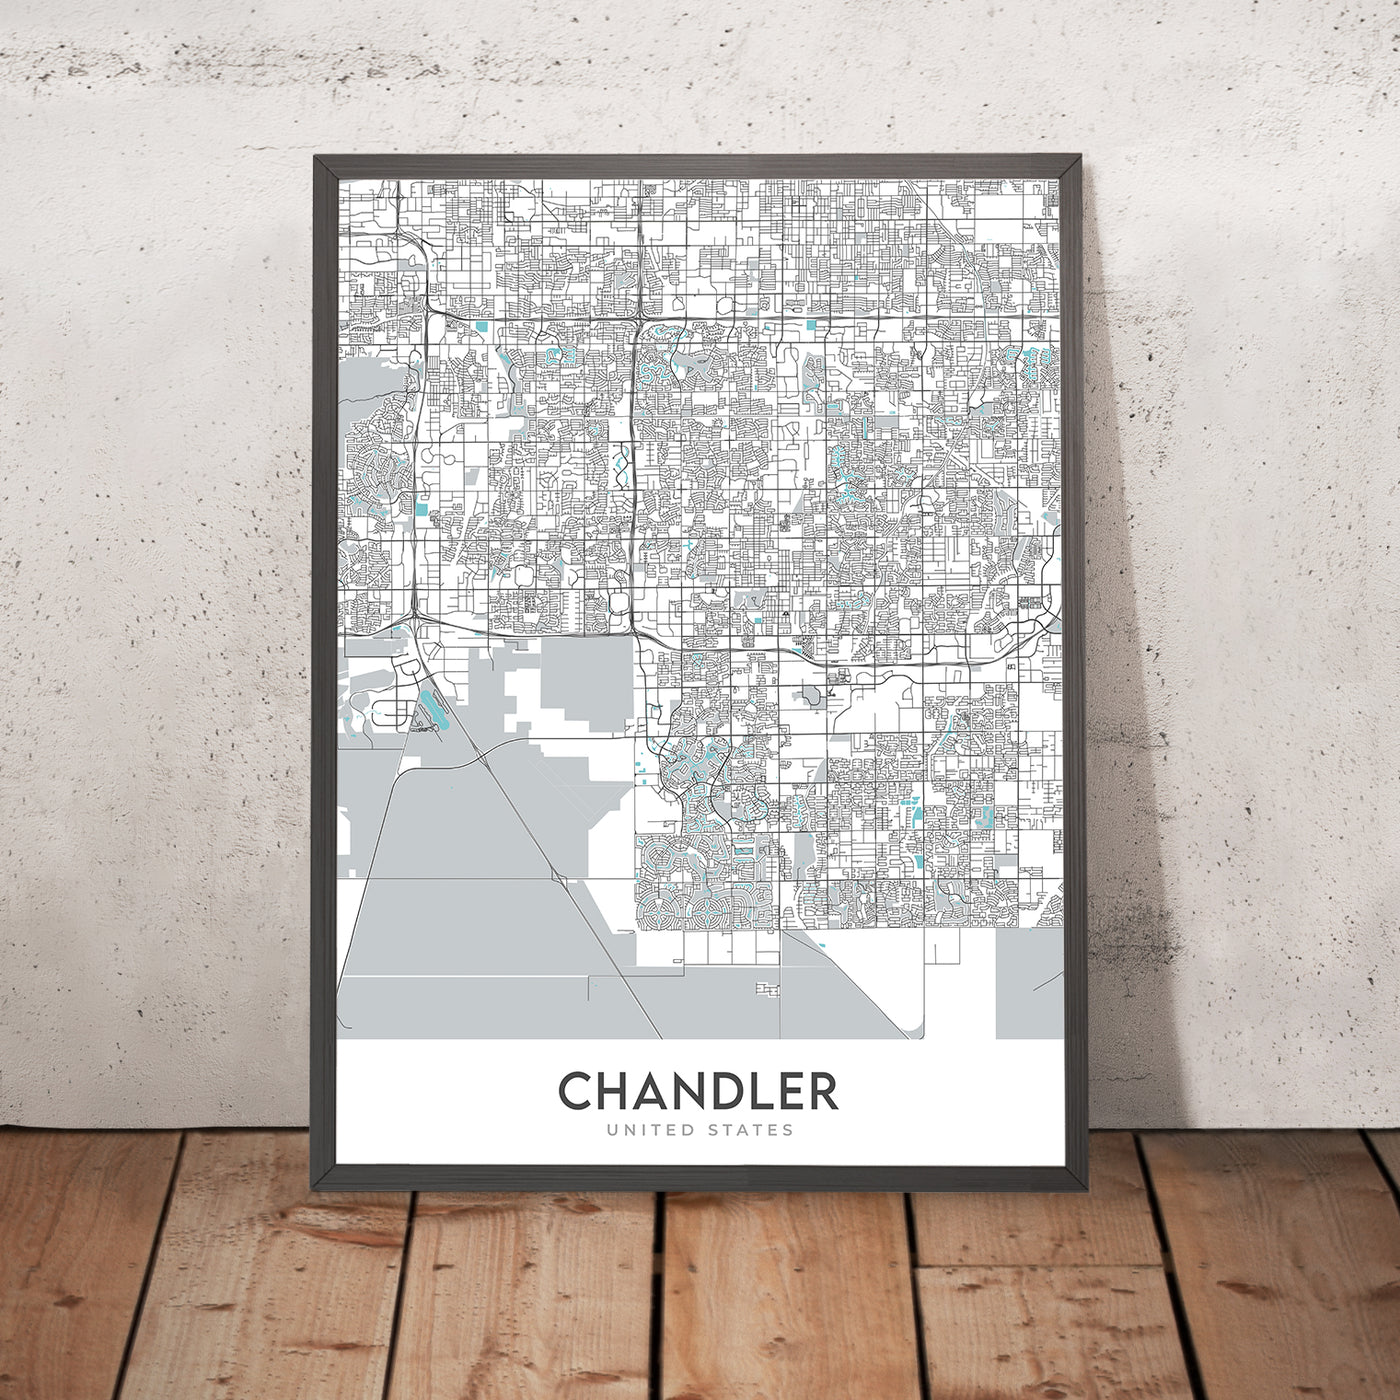 Moderner Stadtplan von Chandler, AZ: Innenstadt, Ocotillo, AZ-101, AZ-202, Chandler Fashion Center